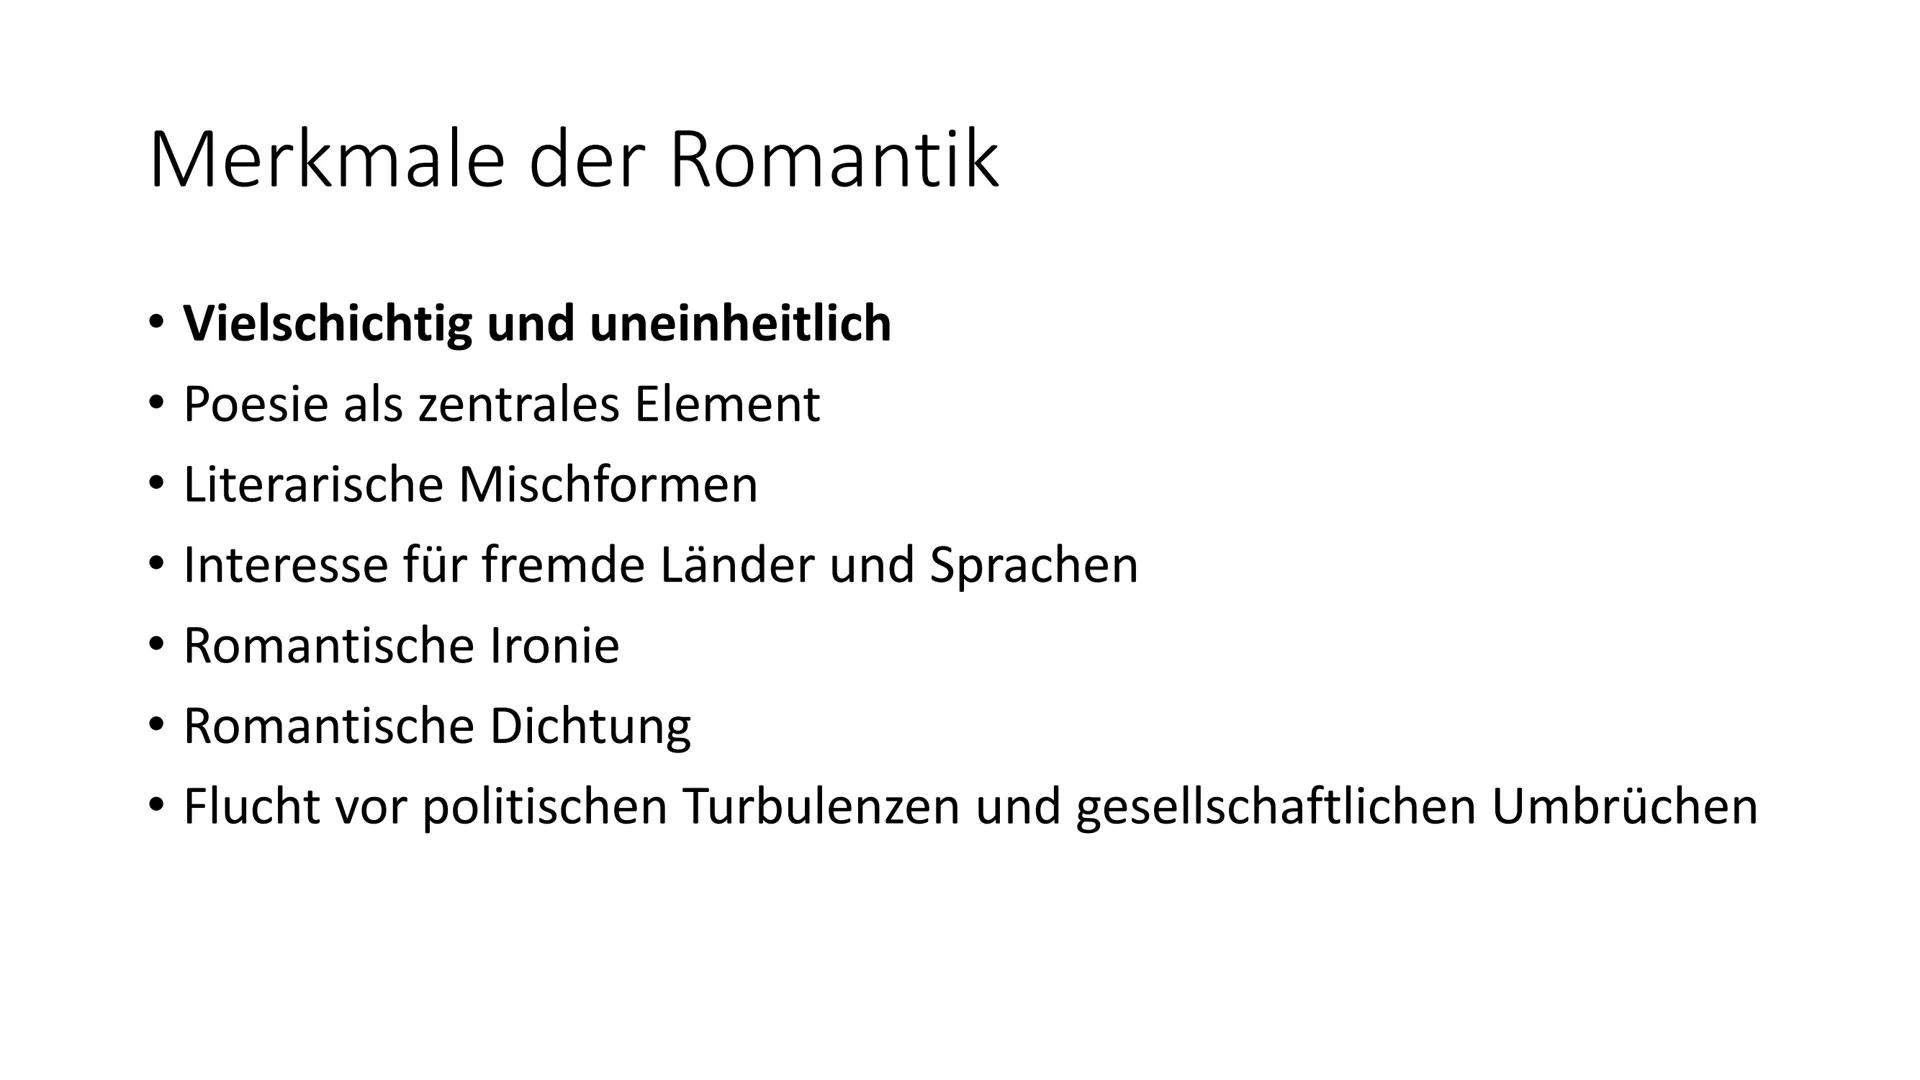 
<h2 id="einordnungderepoche">Einordnung der Epoche</h2>
<p>Die Romantik war eine bedeutende Epoche in der deutschen Literaturgeschichte und